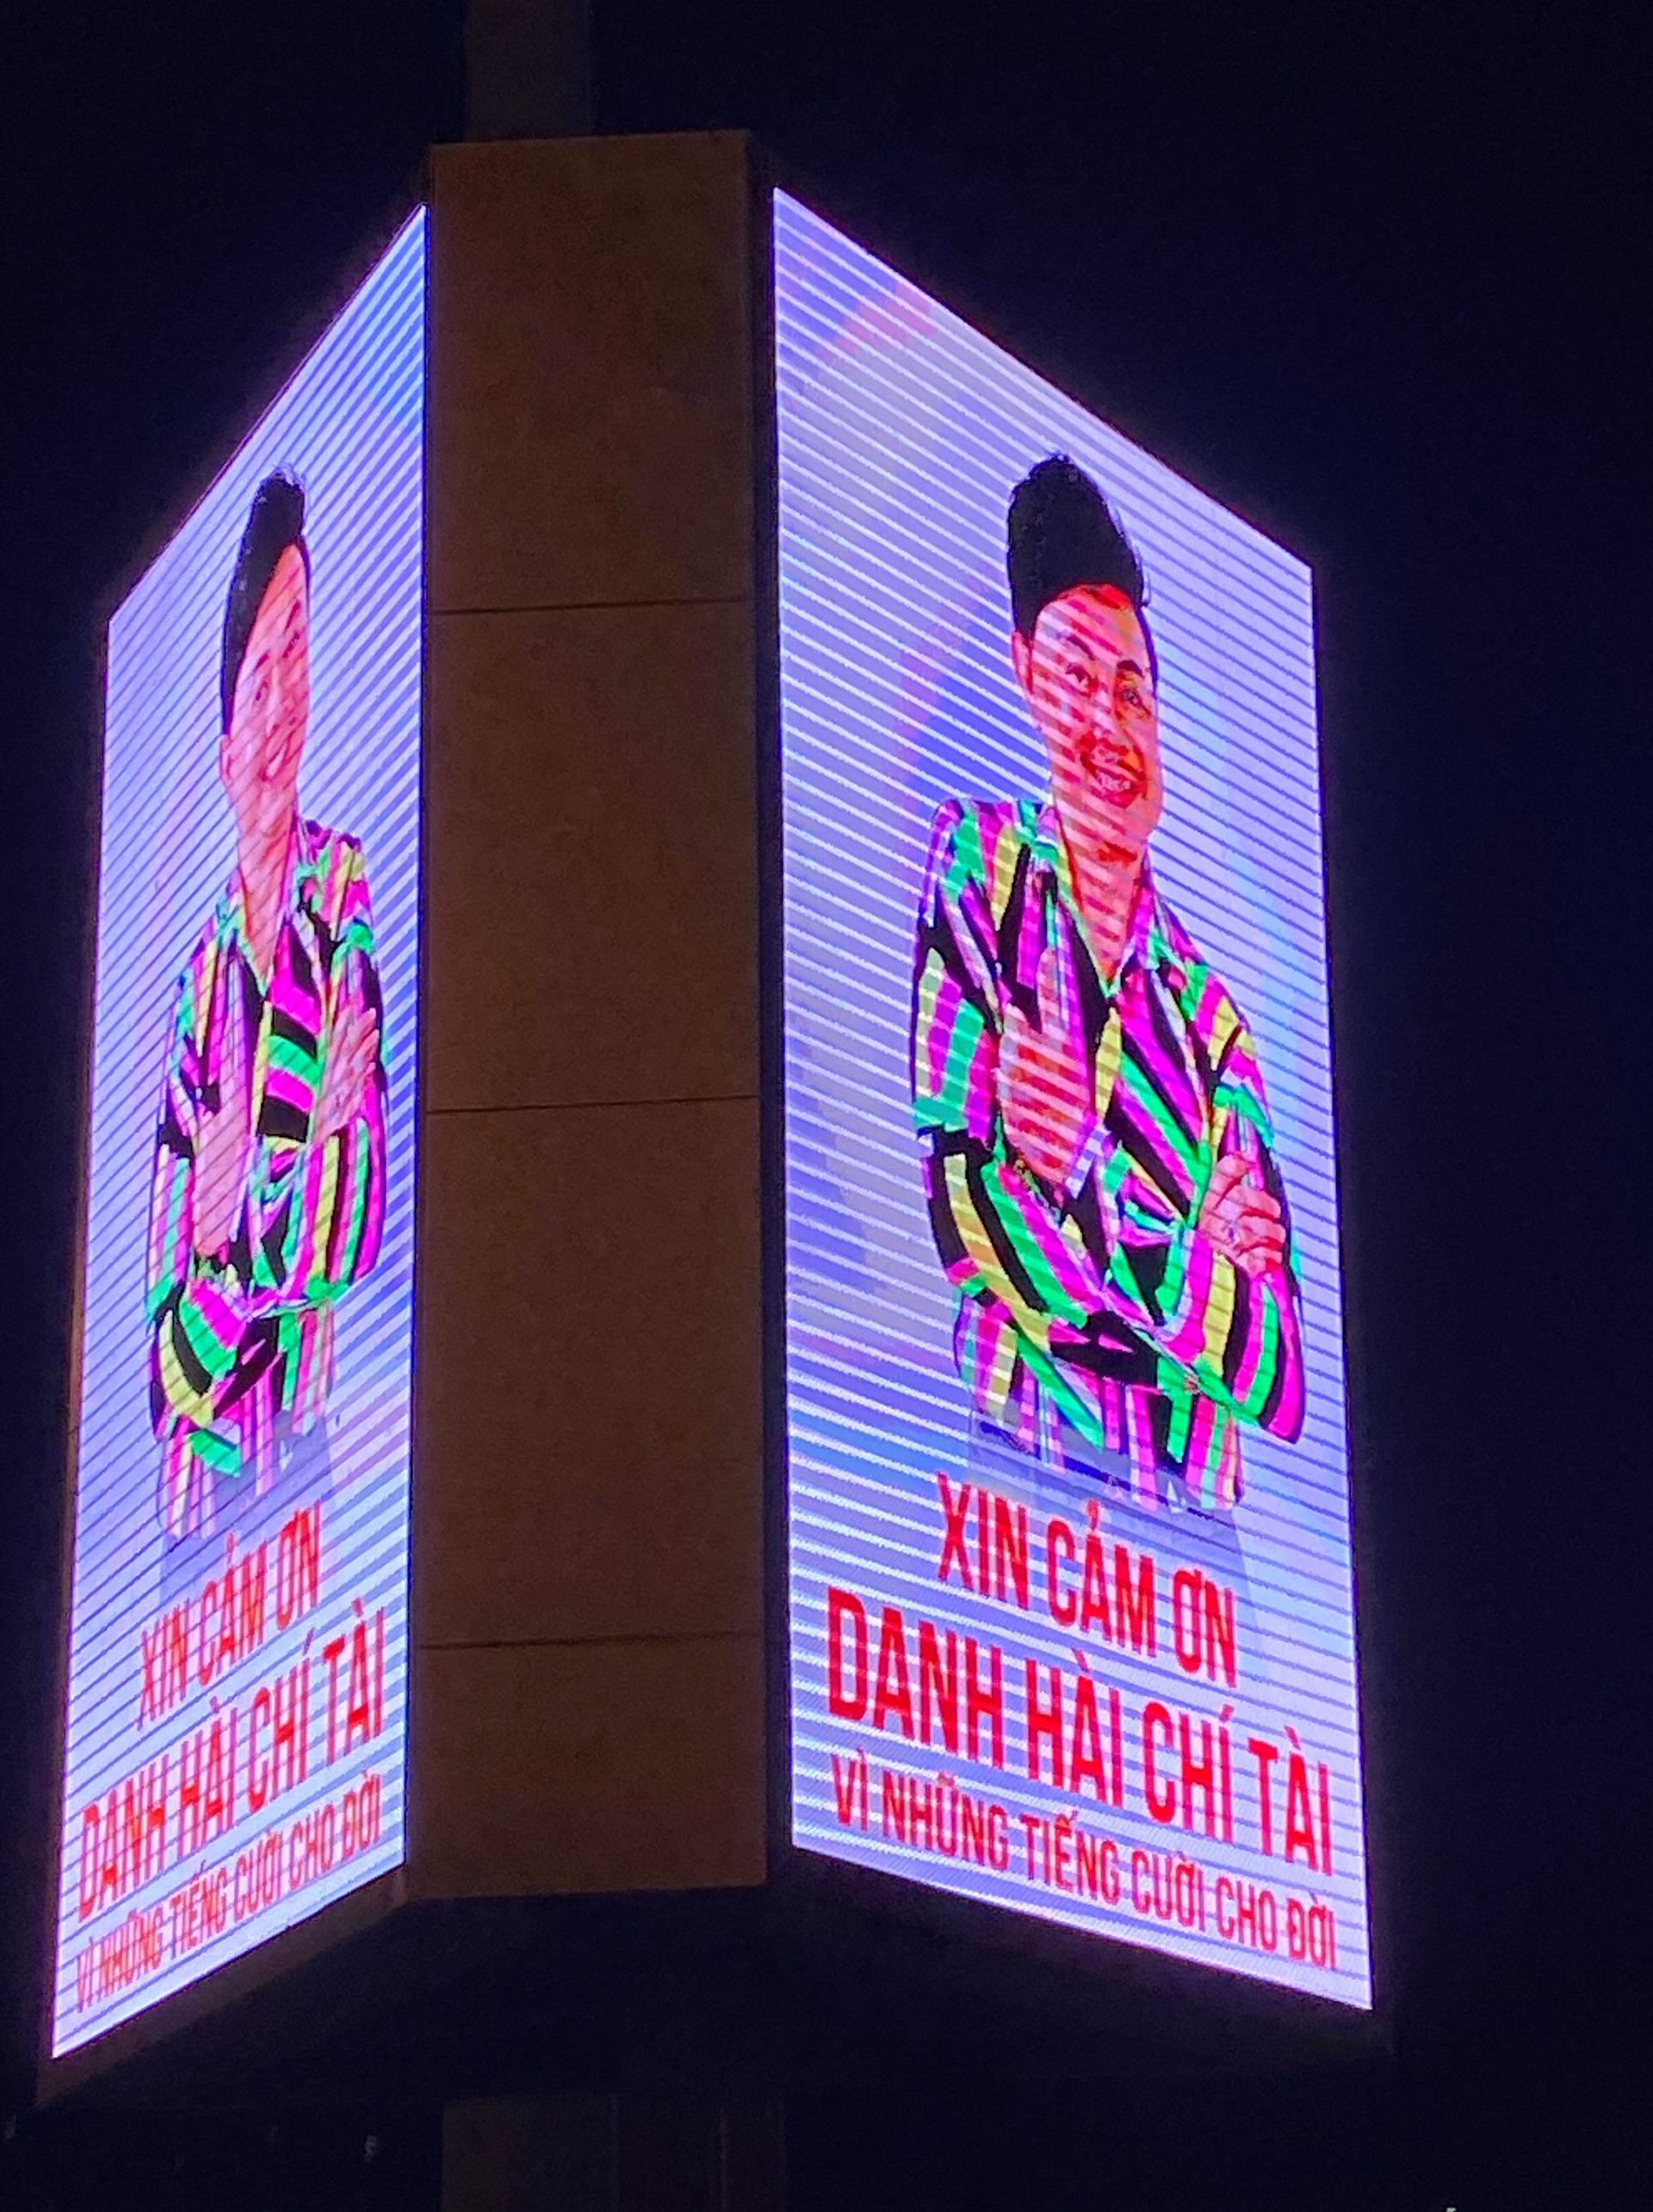 Danh hài Chí Tài được tri ân với biển quảng cáo lớn tại TPHCM - 1